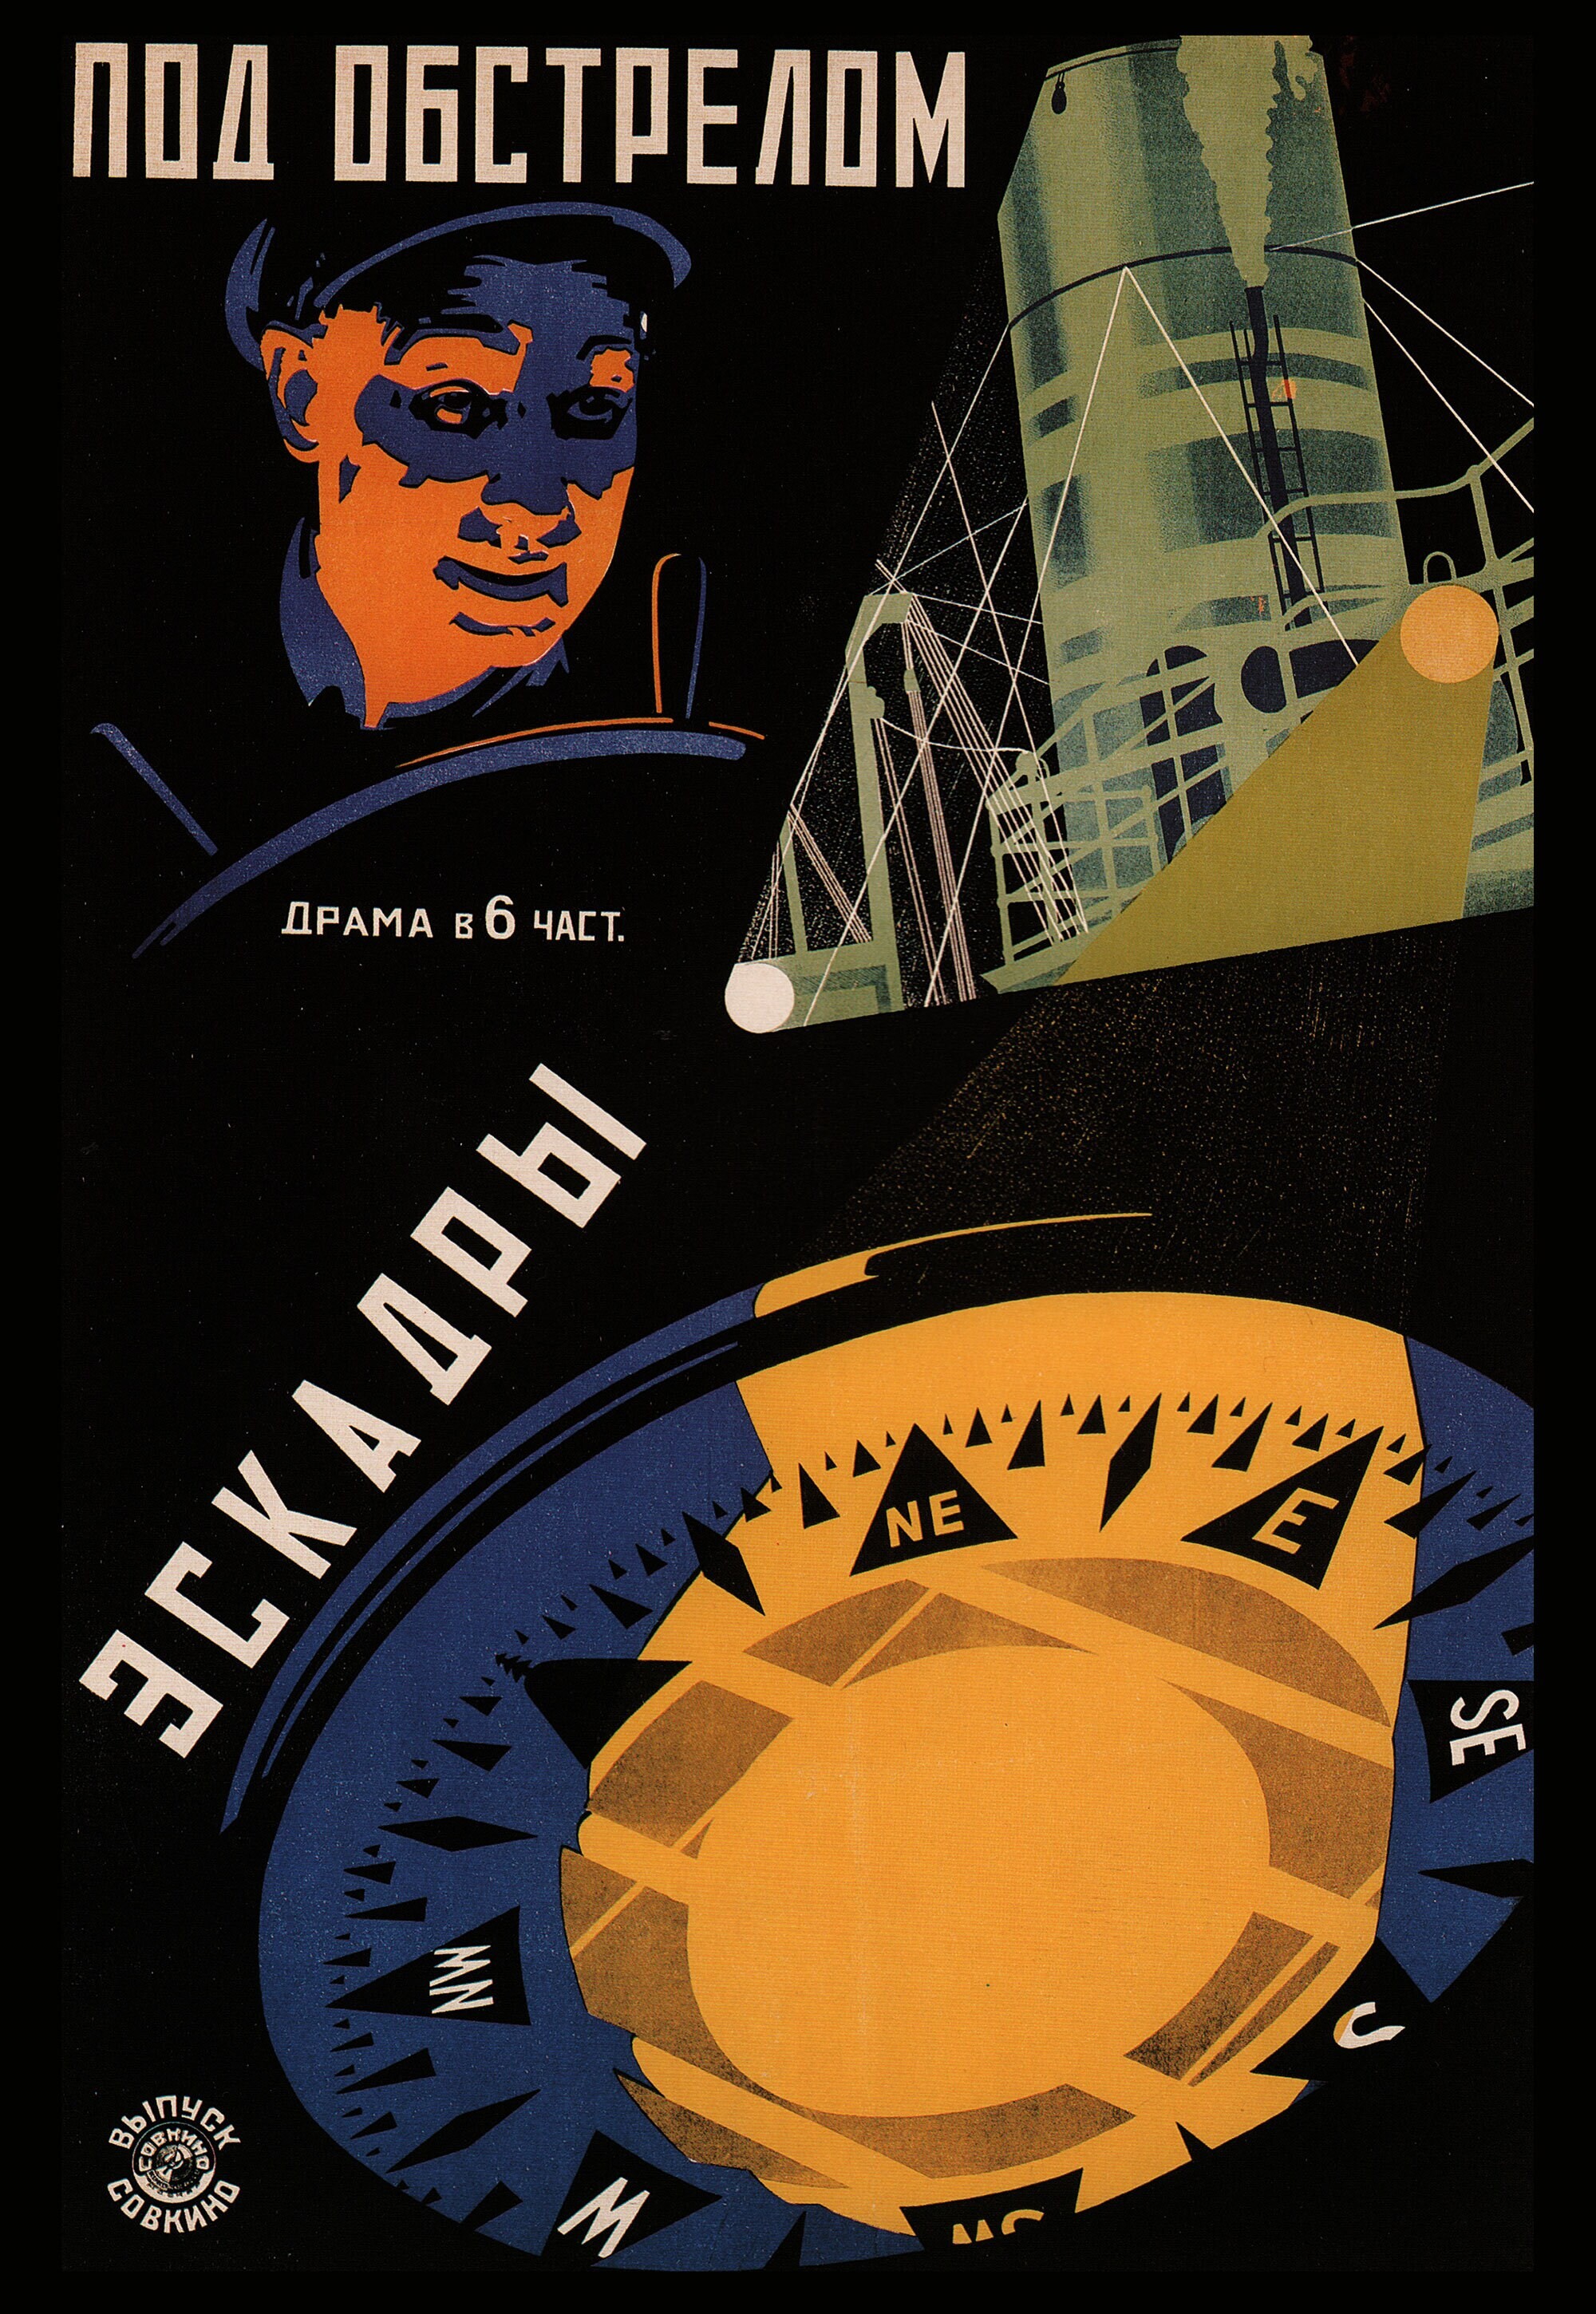 Под обстрелом эскадры, 1924 год,  режиссёр Райнхольд Шюнцель, плакат к фильму, авторы Владимир и Георгий Стенберги (авангардное советское искусство, 1920-е)